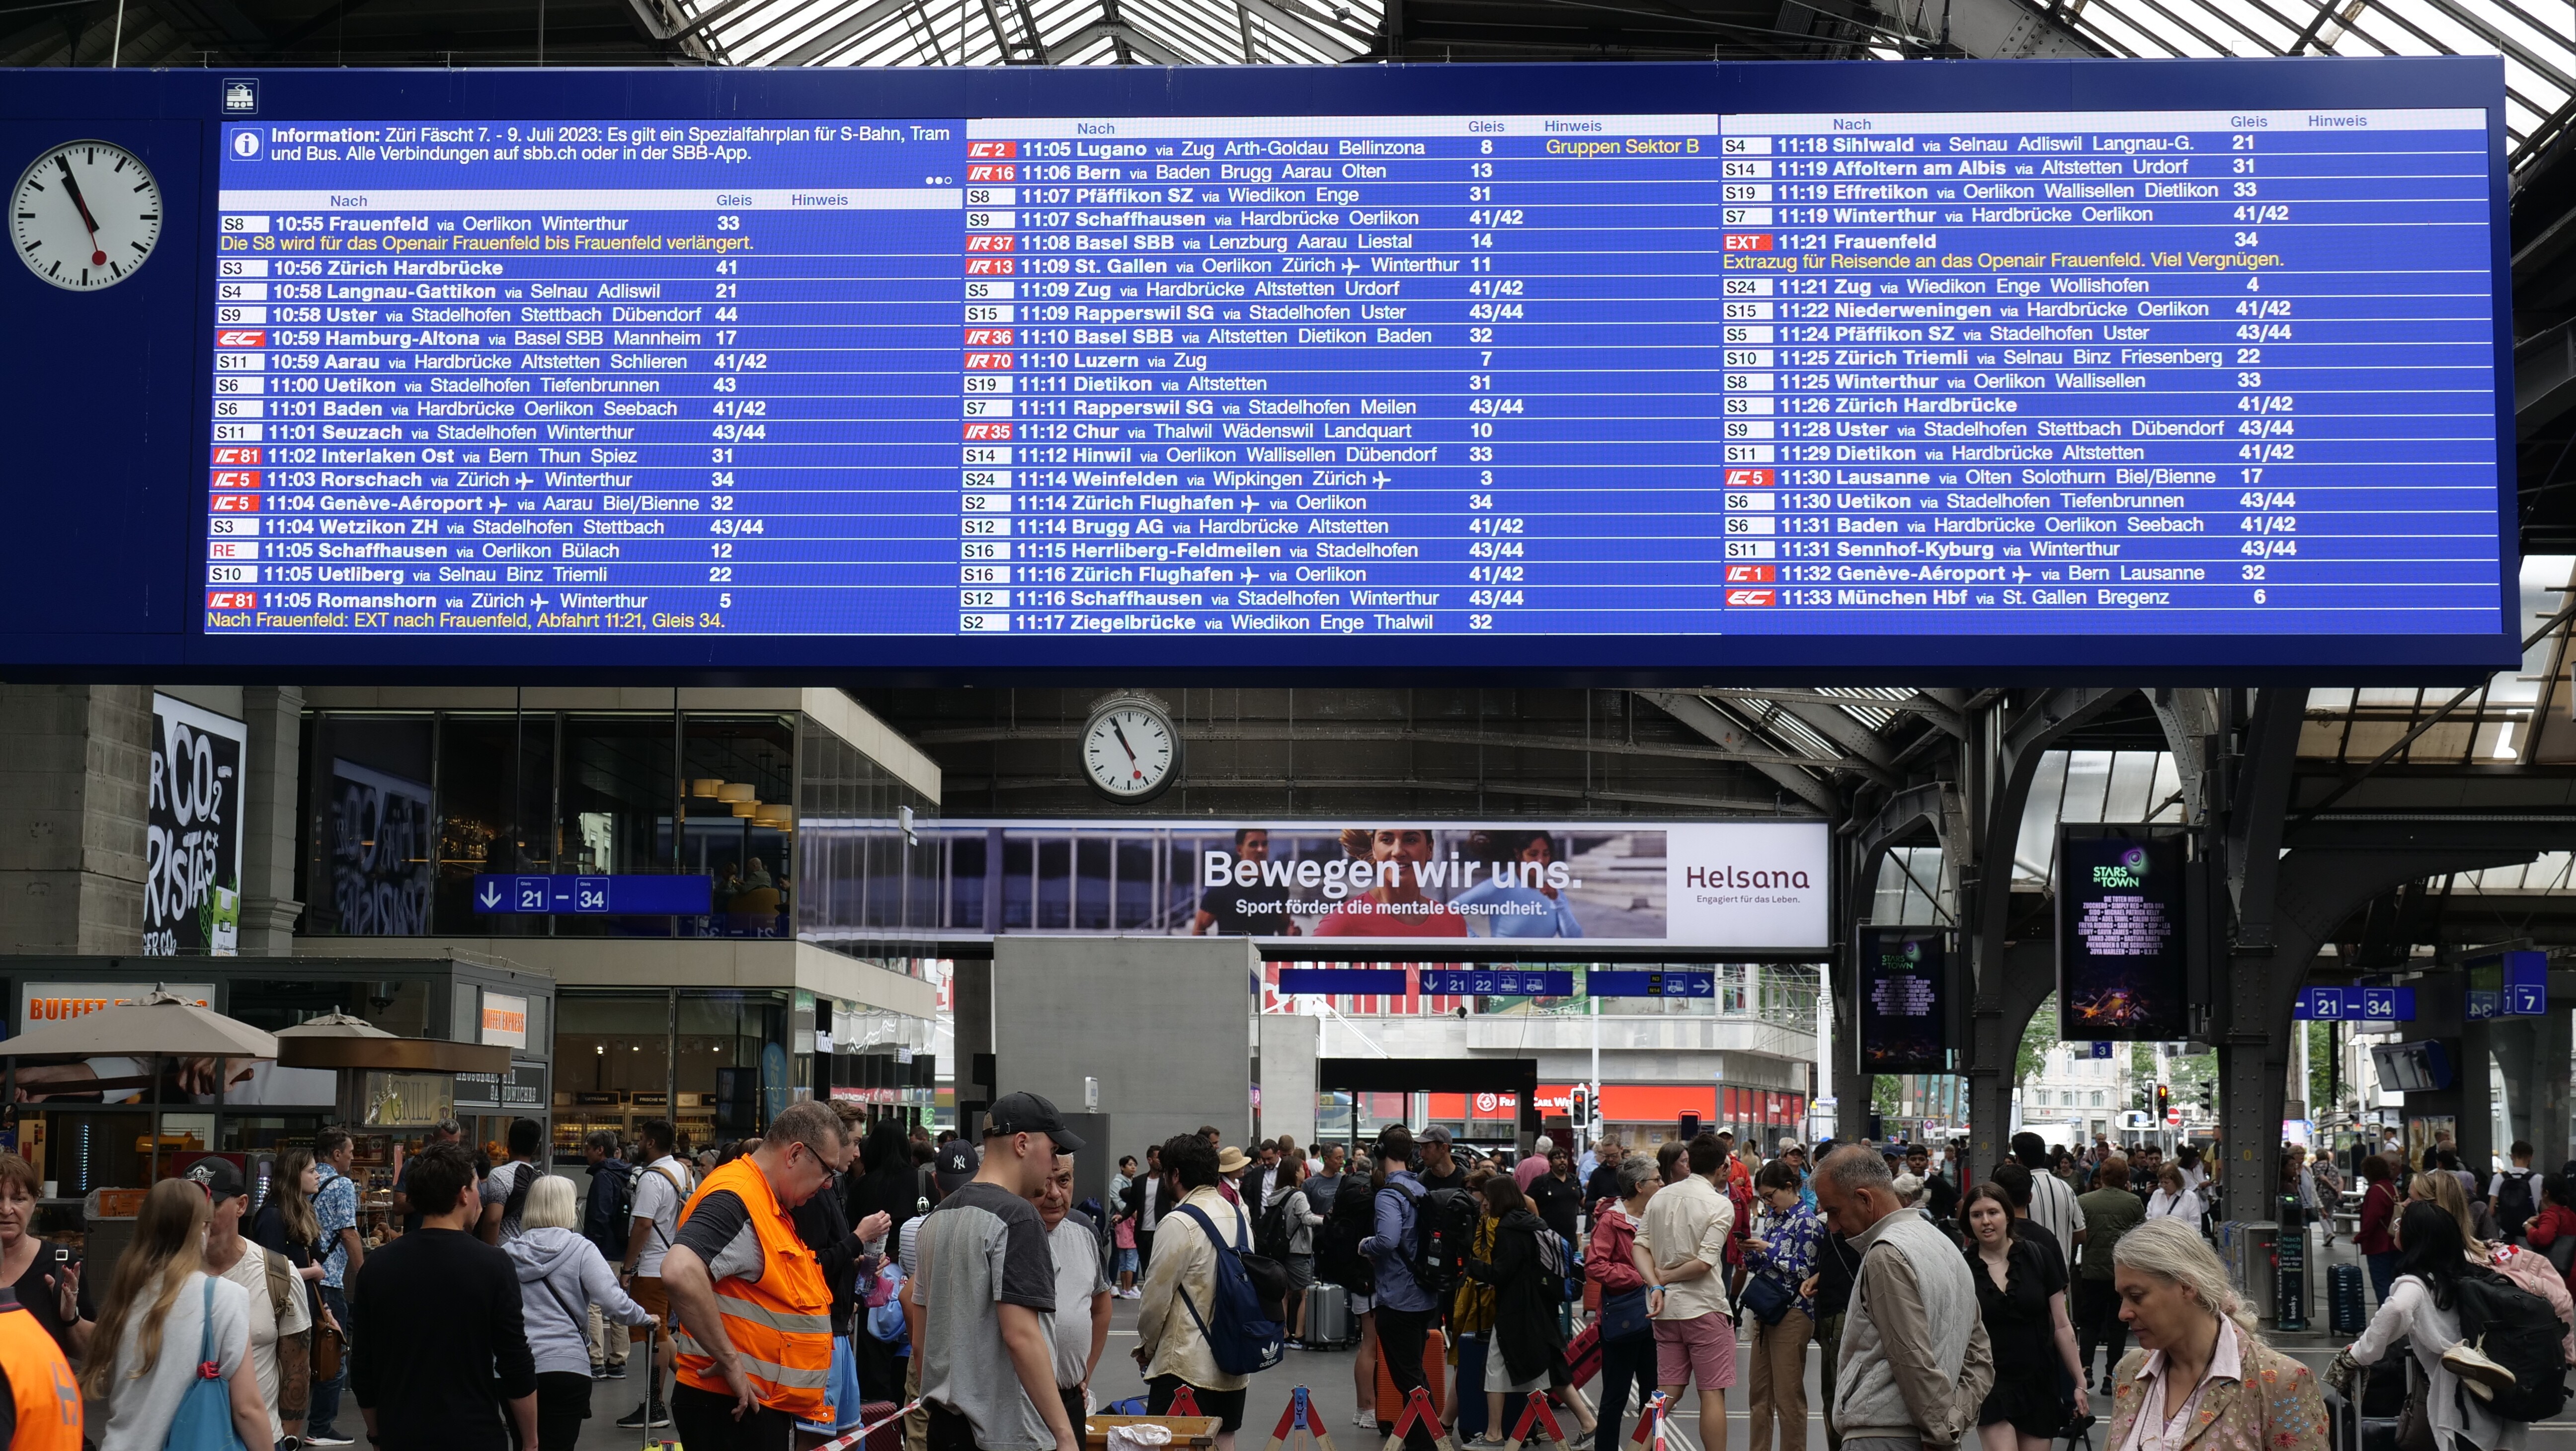 Il tabellone degli orari della stazione di Zurigo con una barra grigia sopra la tabella delle partenze e i collegamenti successivi ordinati per orario di partenza, con la stazione terminale visualizzata per prima, seguita dalle fermate intermedie. Le informazioni su un evento attuale appaiono in alto a sinistra.